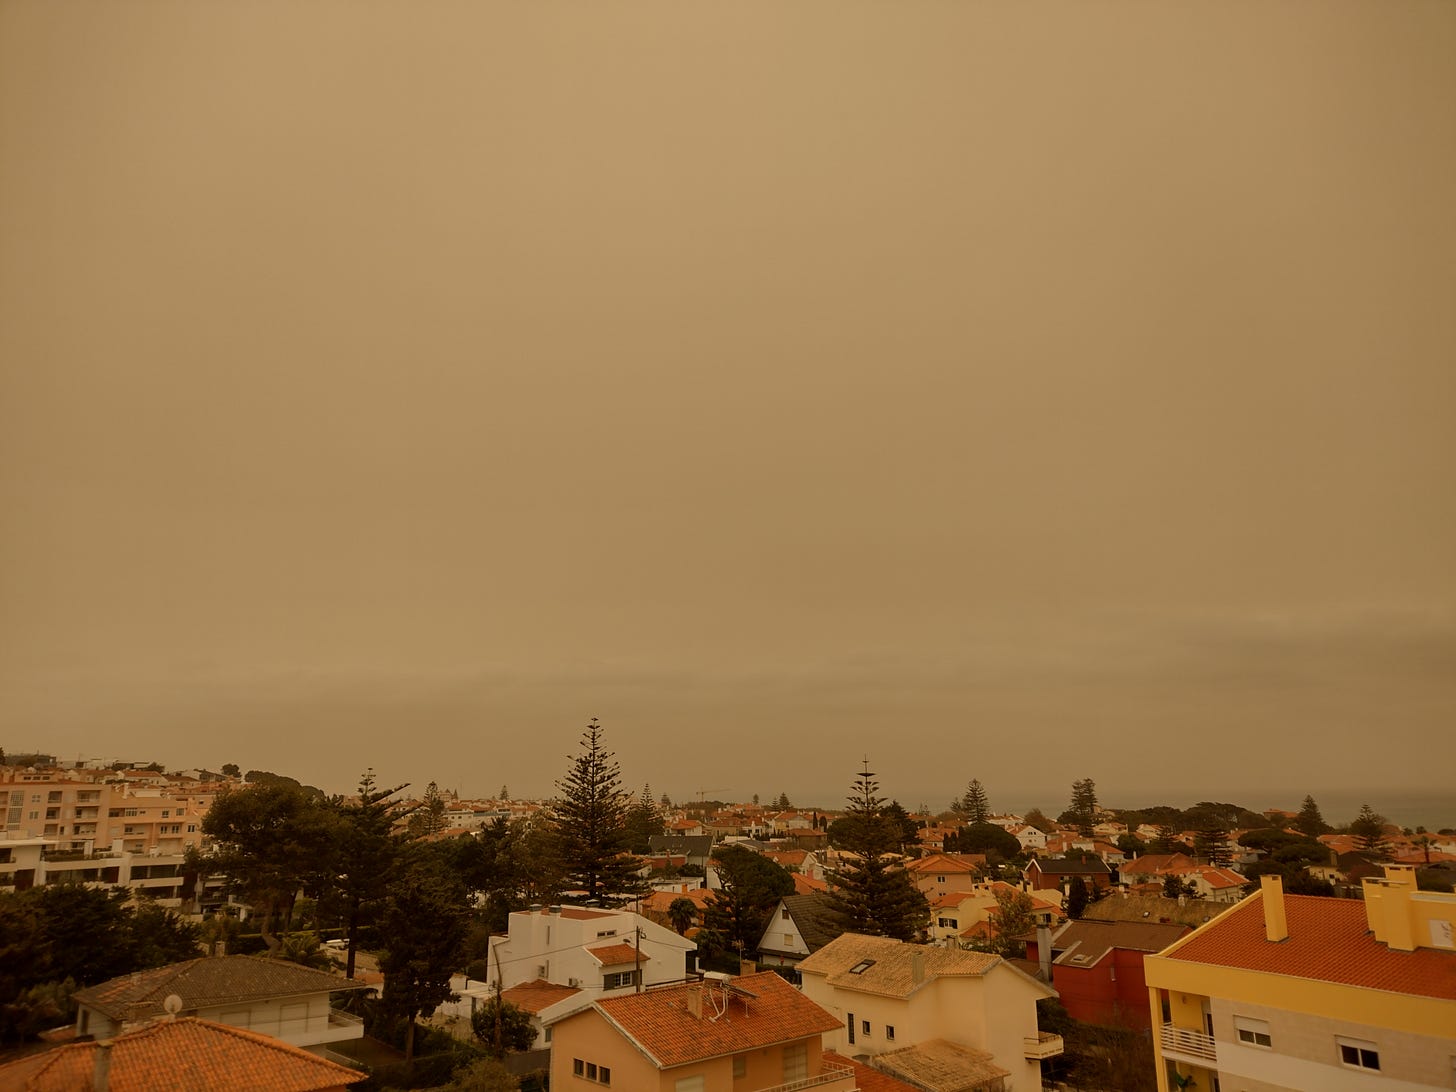 Orange sky in Portugal